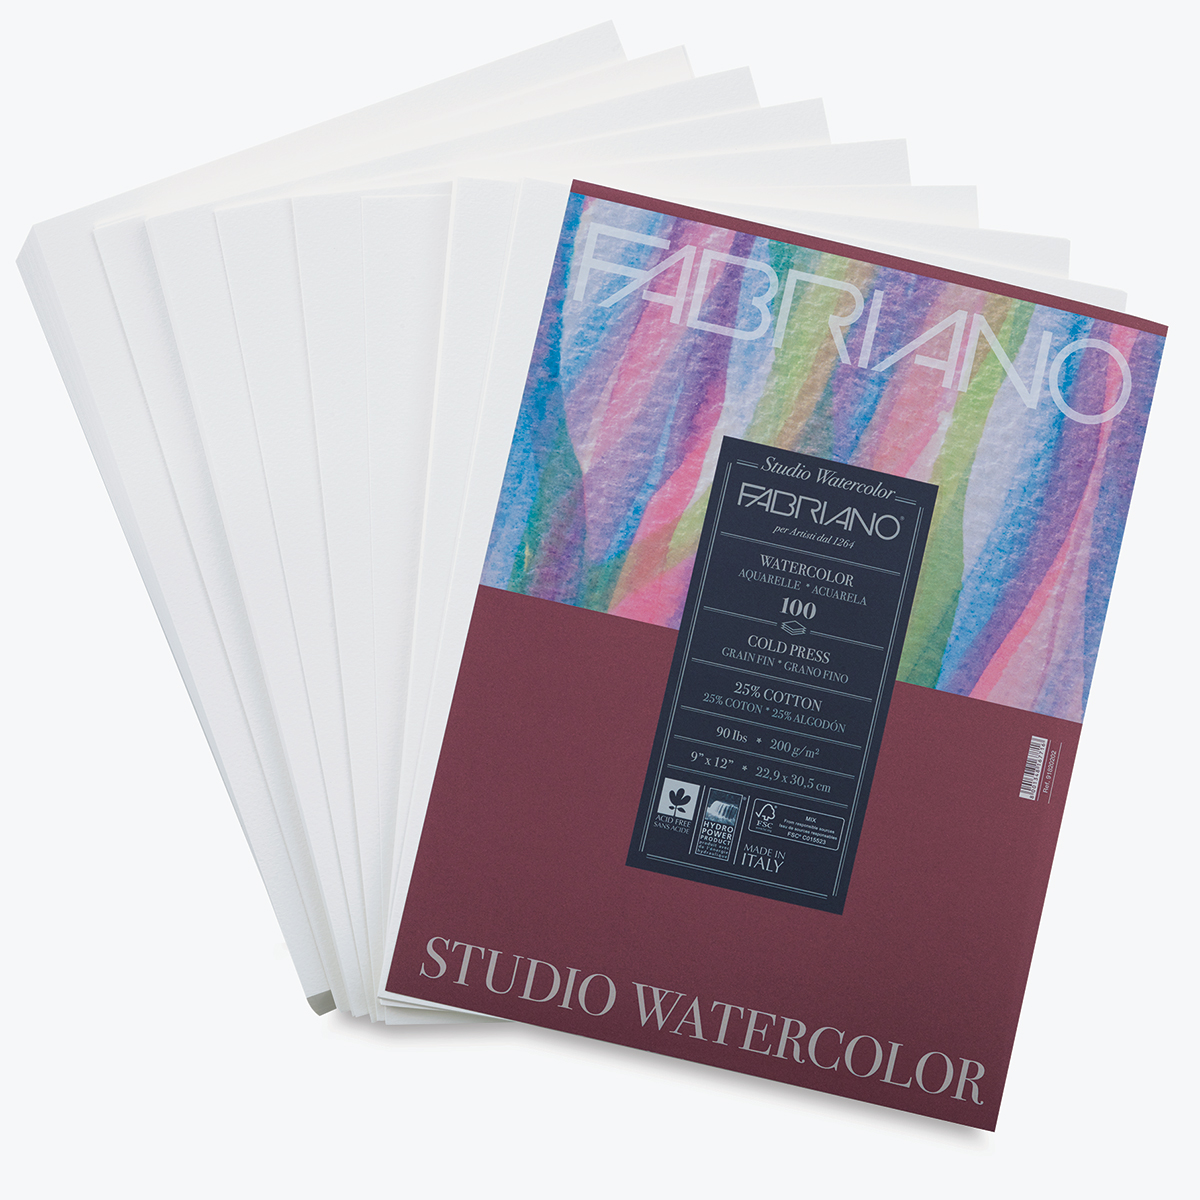 Fabriano Studio Watercolour Paper Review 